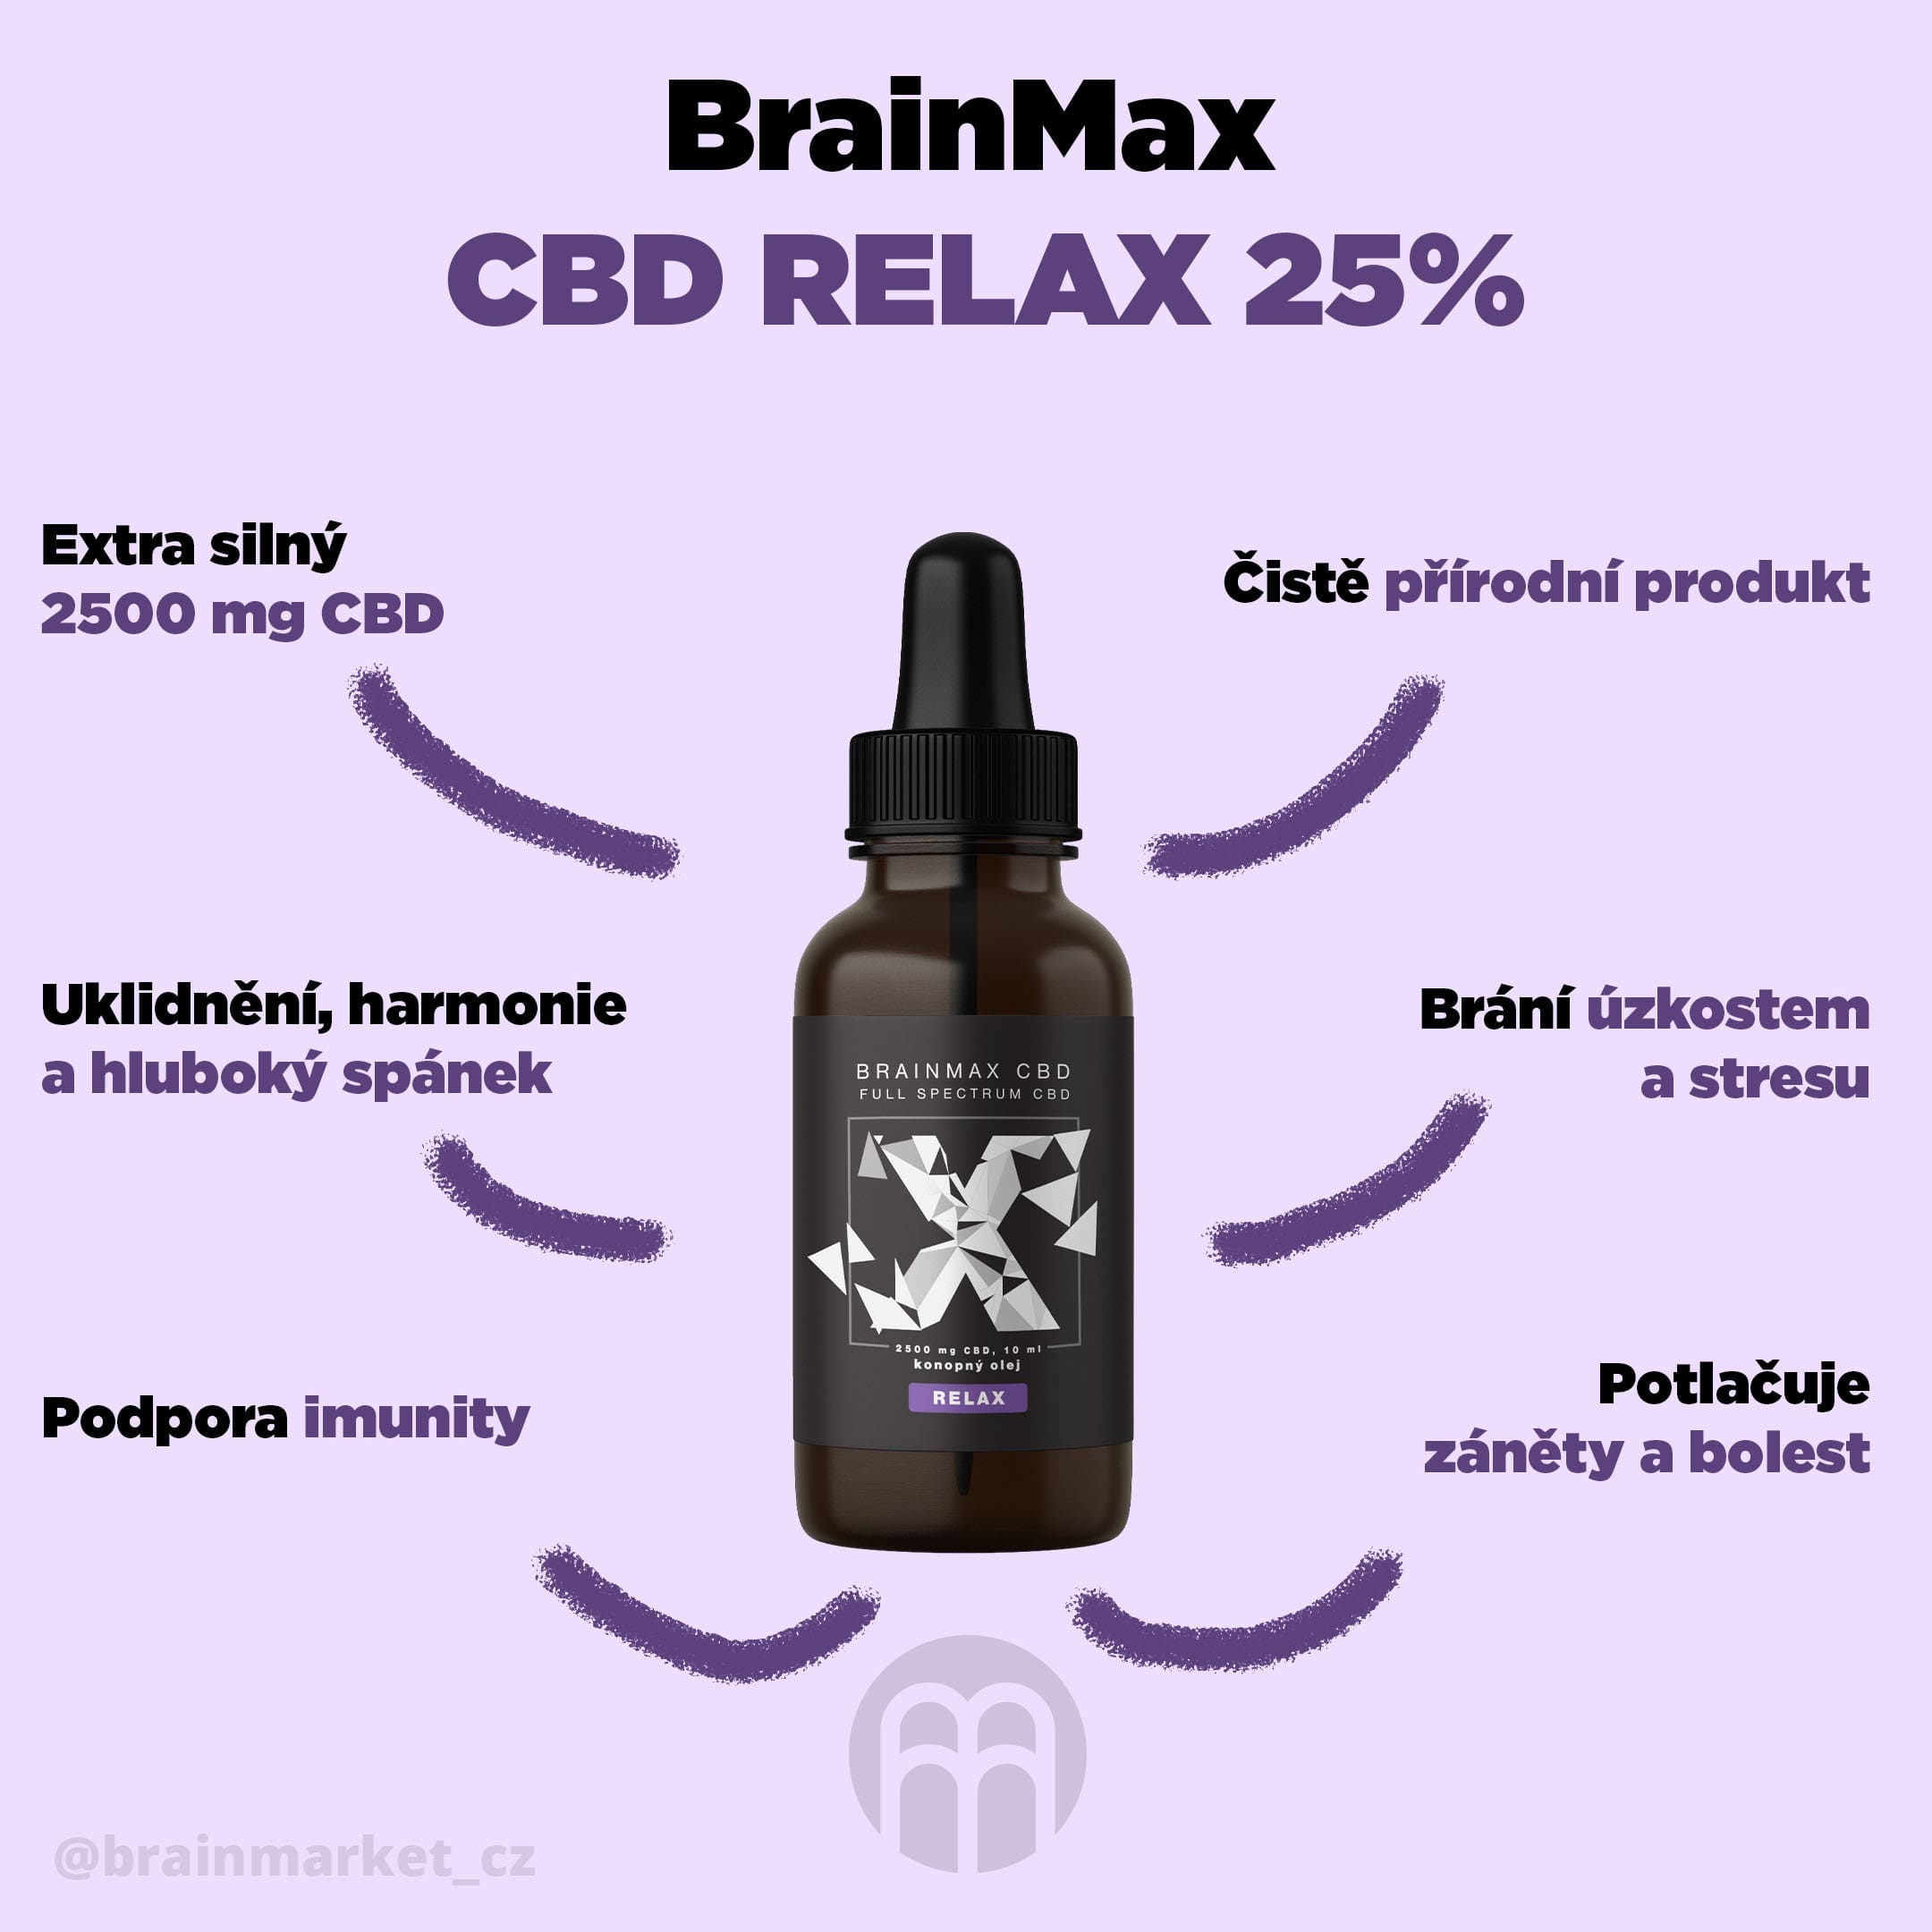 cbd-relax-infografika-brainmarket-2-cz